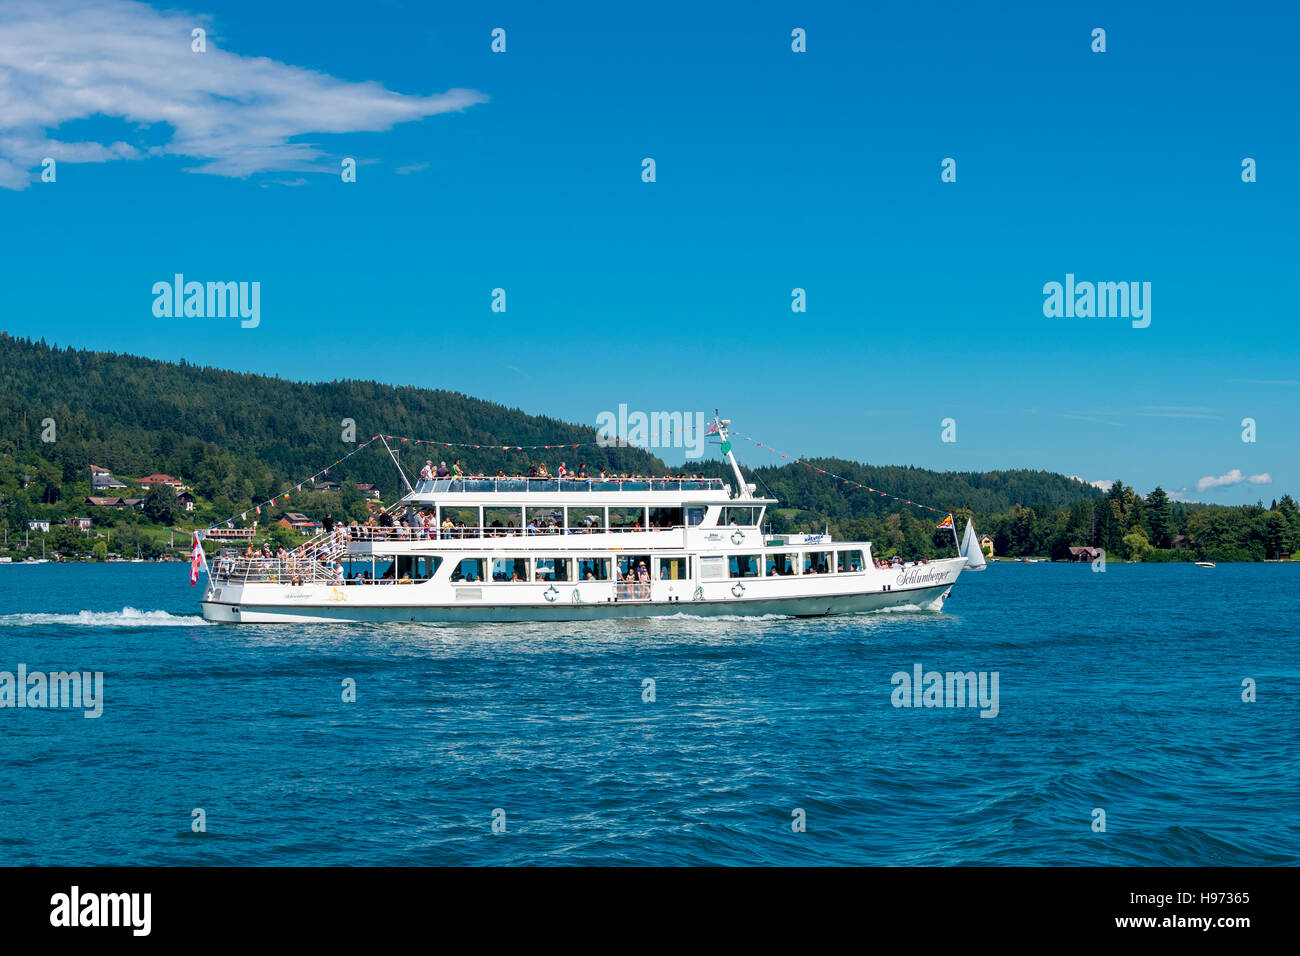 Velden, Autriche - le 14 août 2016 : Schlumberger navire à passagers sur le lac Worthersee en haute saison touristique sur ligne régulière Banque D'Images